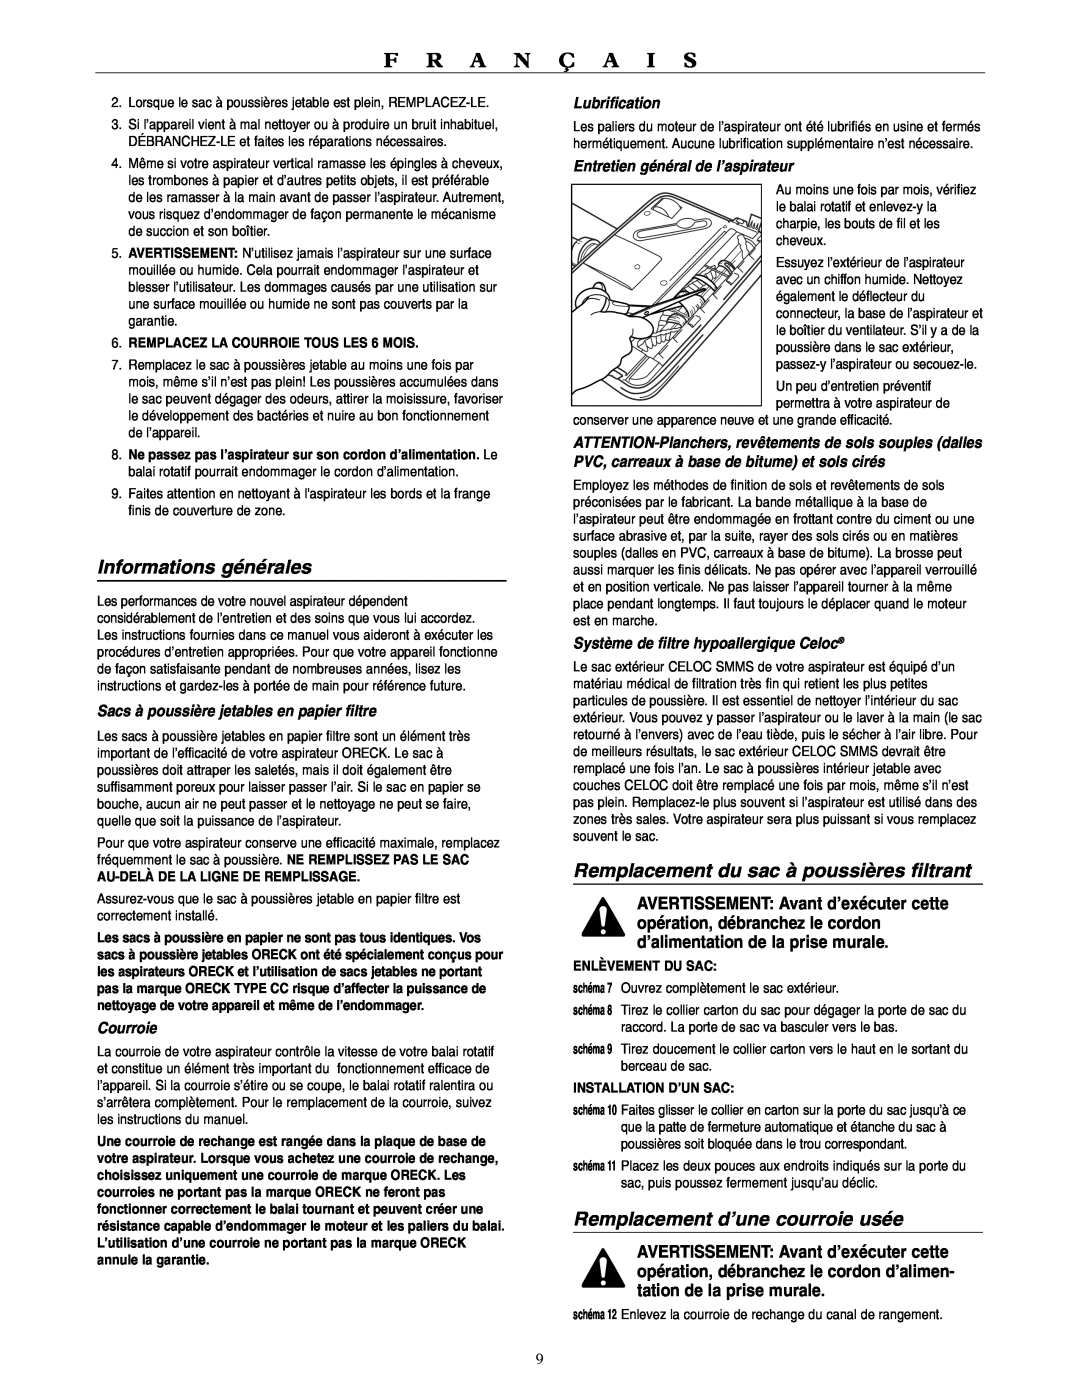 Oreck U3700HH warranty Informations générales, Remplacement du sac à poussières filtrant, Remplacement d’une courroie usée 